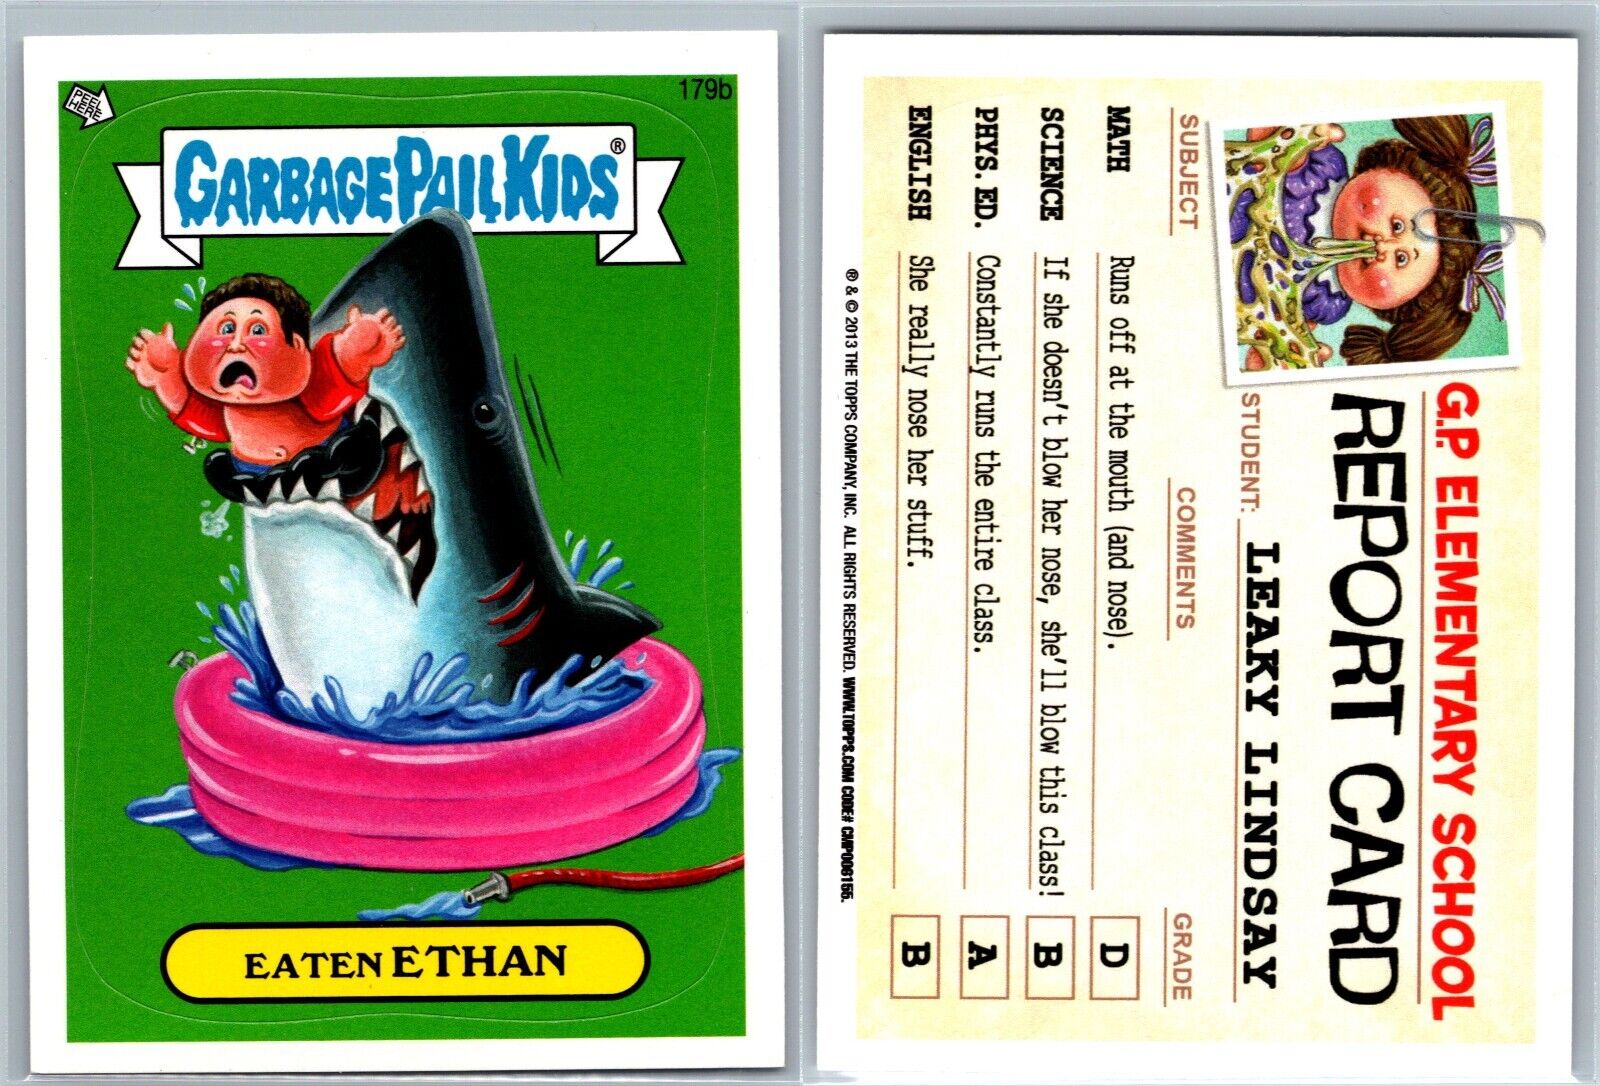 2013 Topps Garbage Pail Kids Brand-New Series 3 GPK Card Eaten Ethan 179b